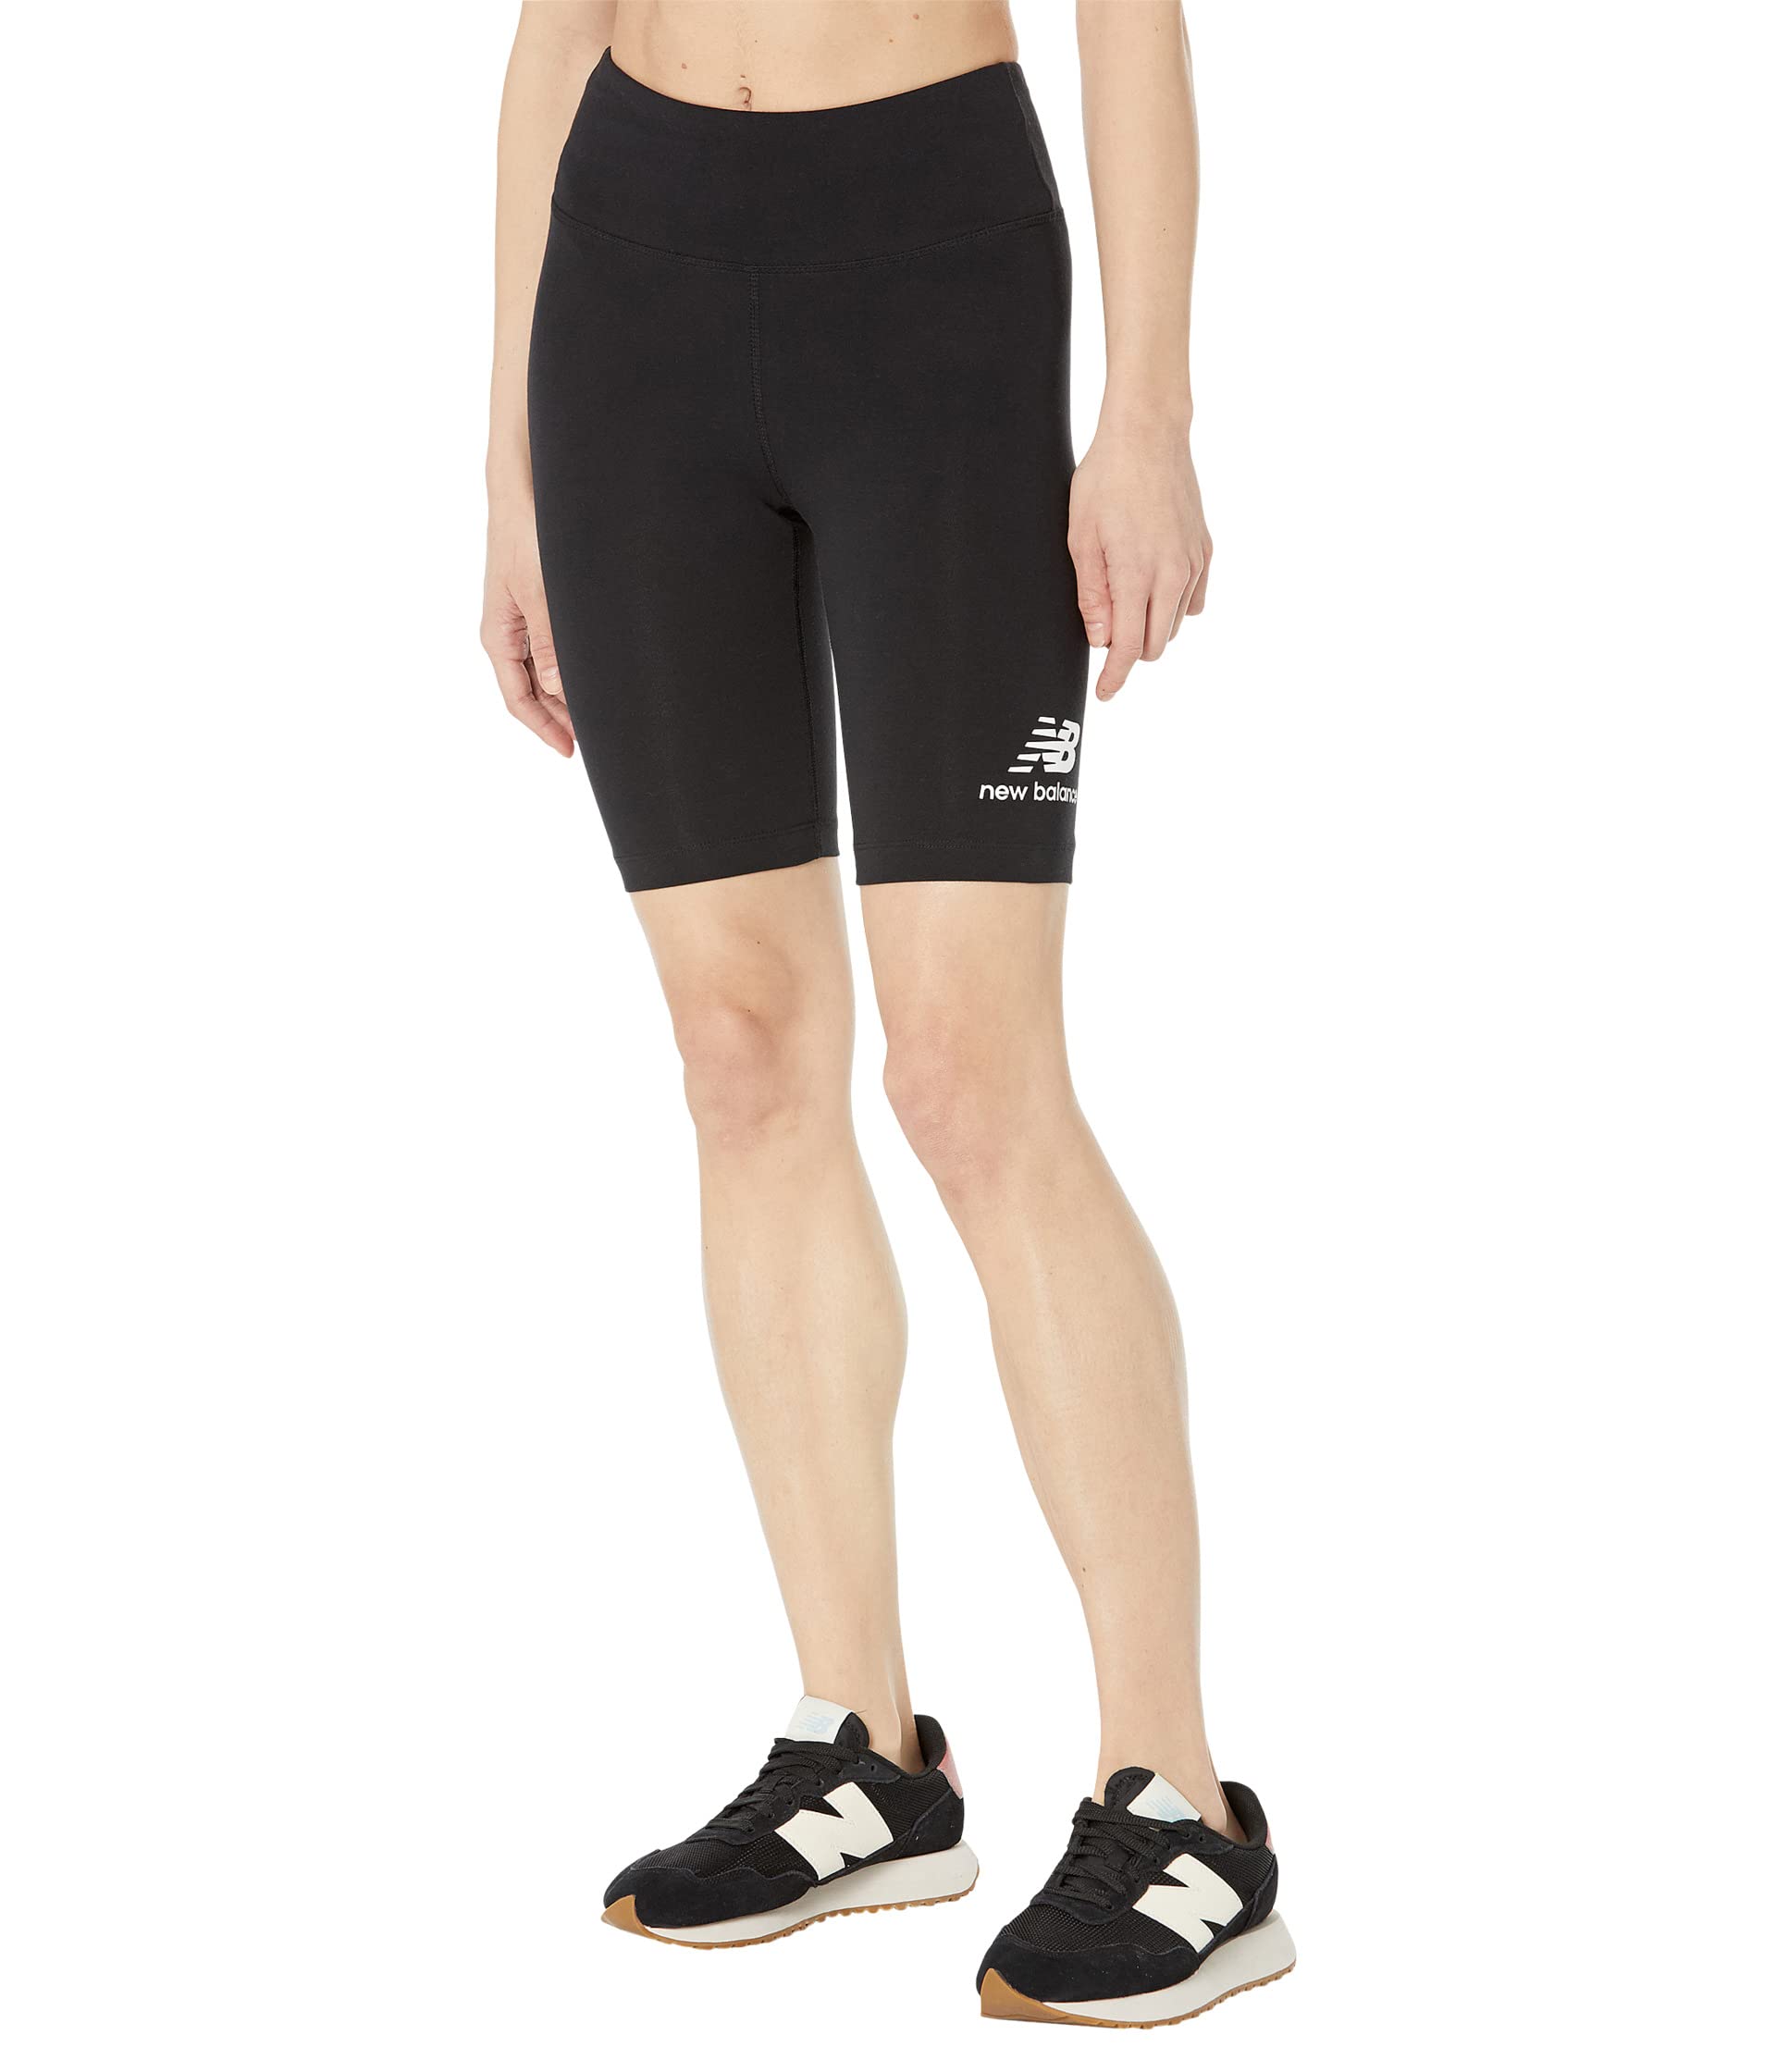 

Шорты New Balance, Essentials Stacked Biker Shorts